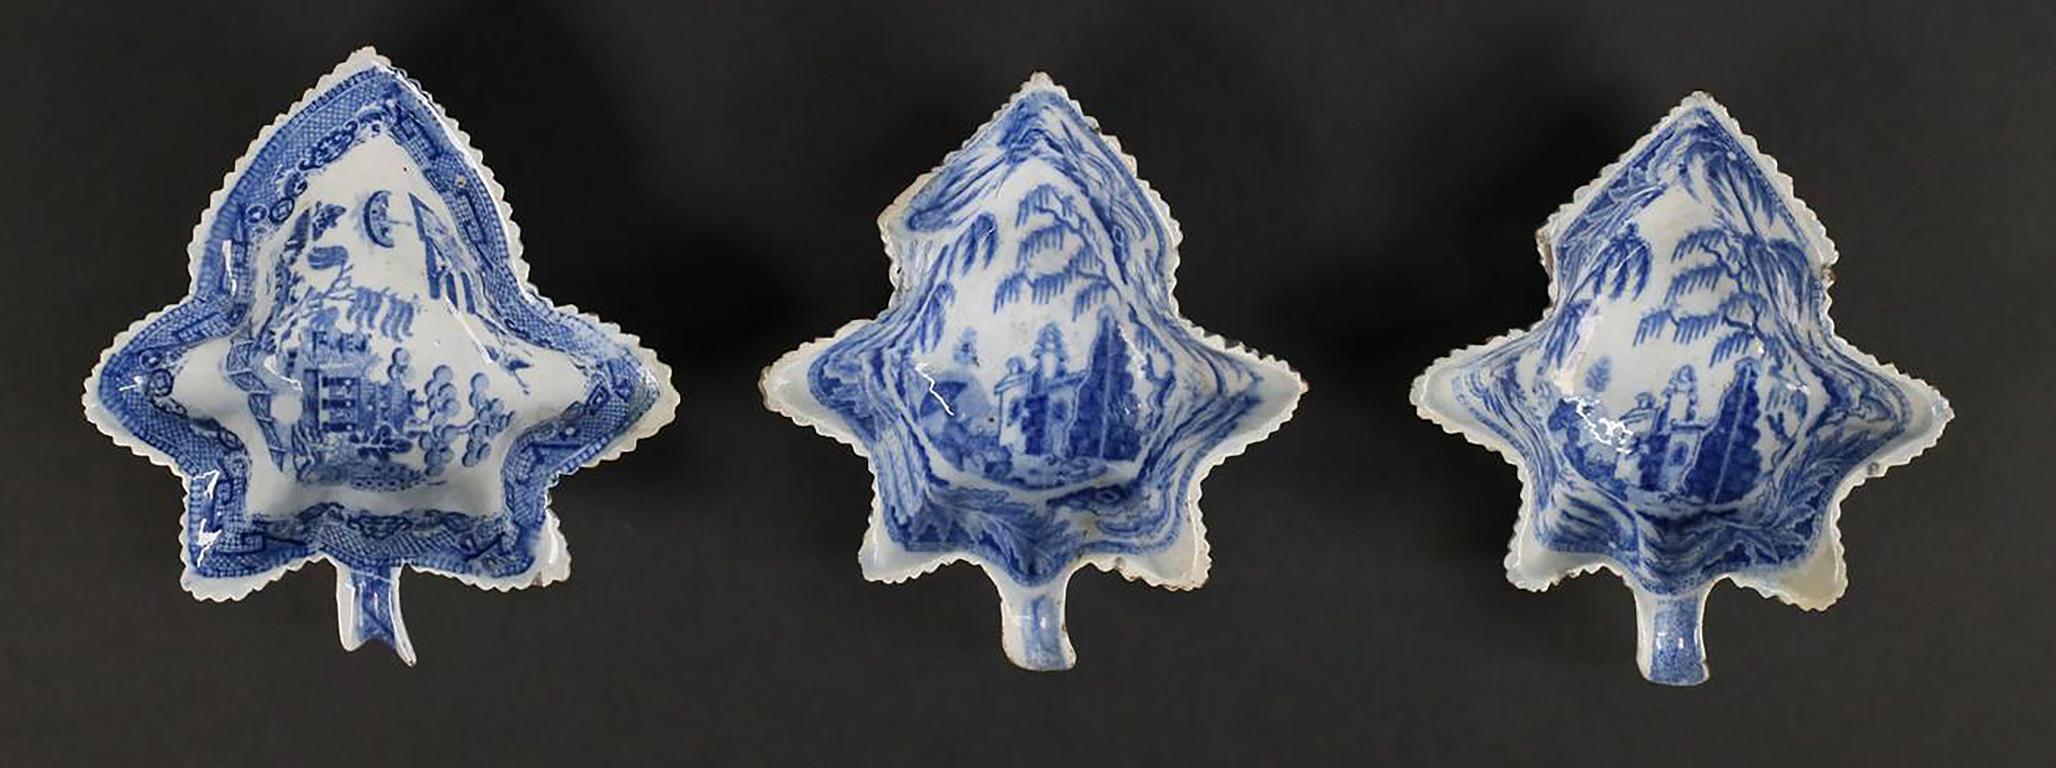 Trois plats à feuilles en porcelaine du Staffordshire bleu et blanc avec scènes de Chinoiserie de style Canton

Anonyme
Staffordshire, Angleterre ; Première moitié du XIXe siècle
Vaisselle de transfert en porcelaine bleue

Dimensions approximatives